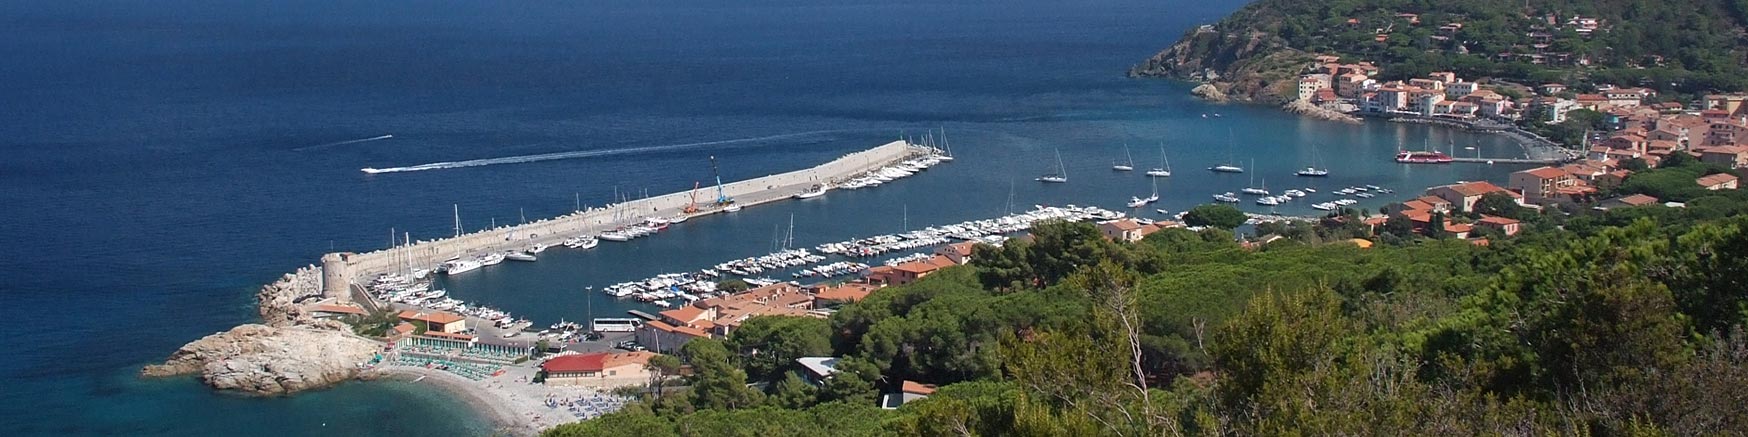 Marciana Marina, Island of Elba